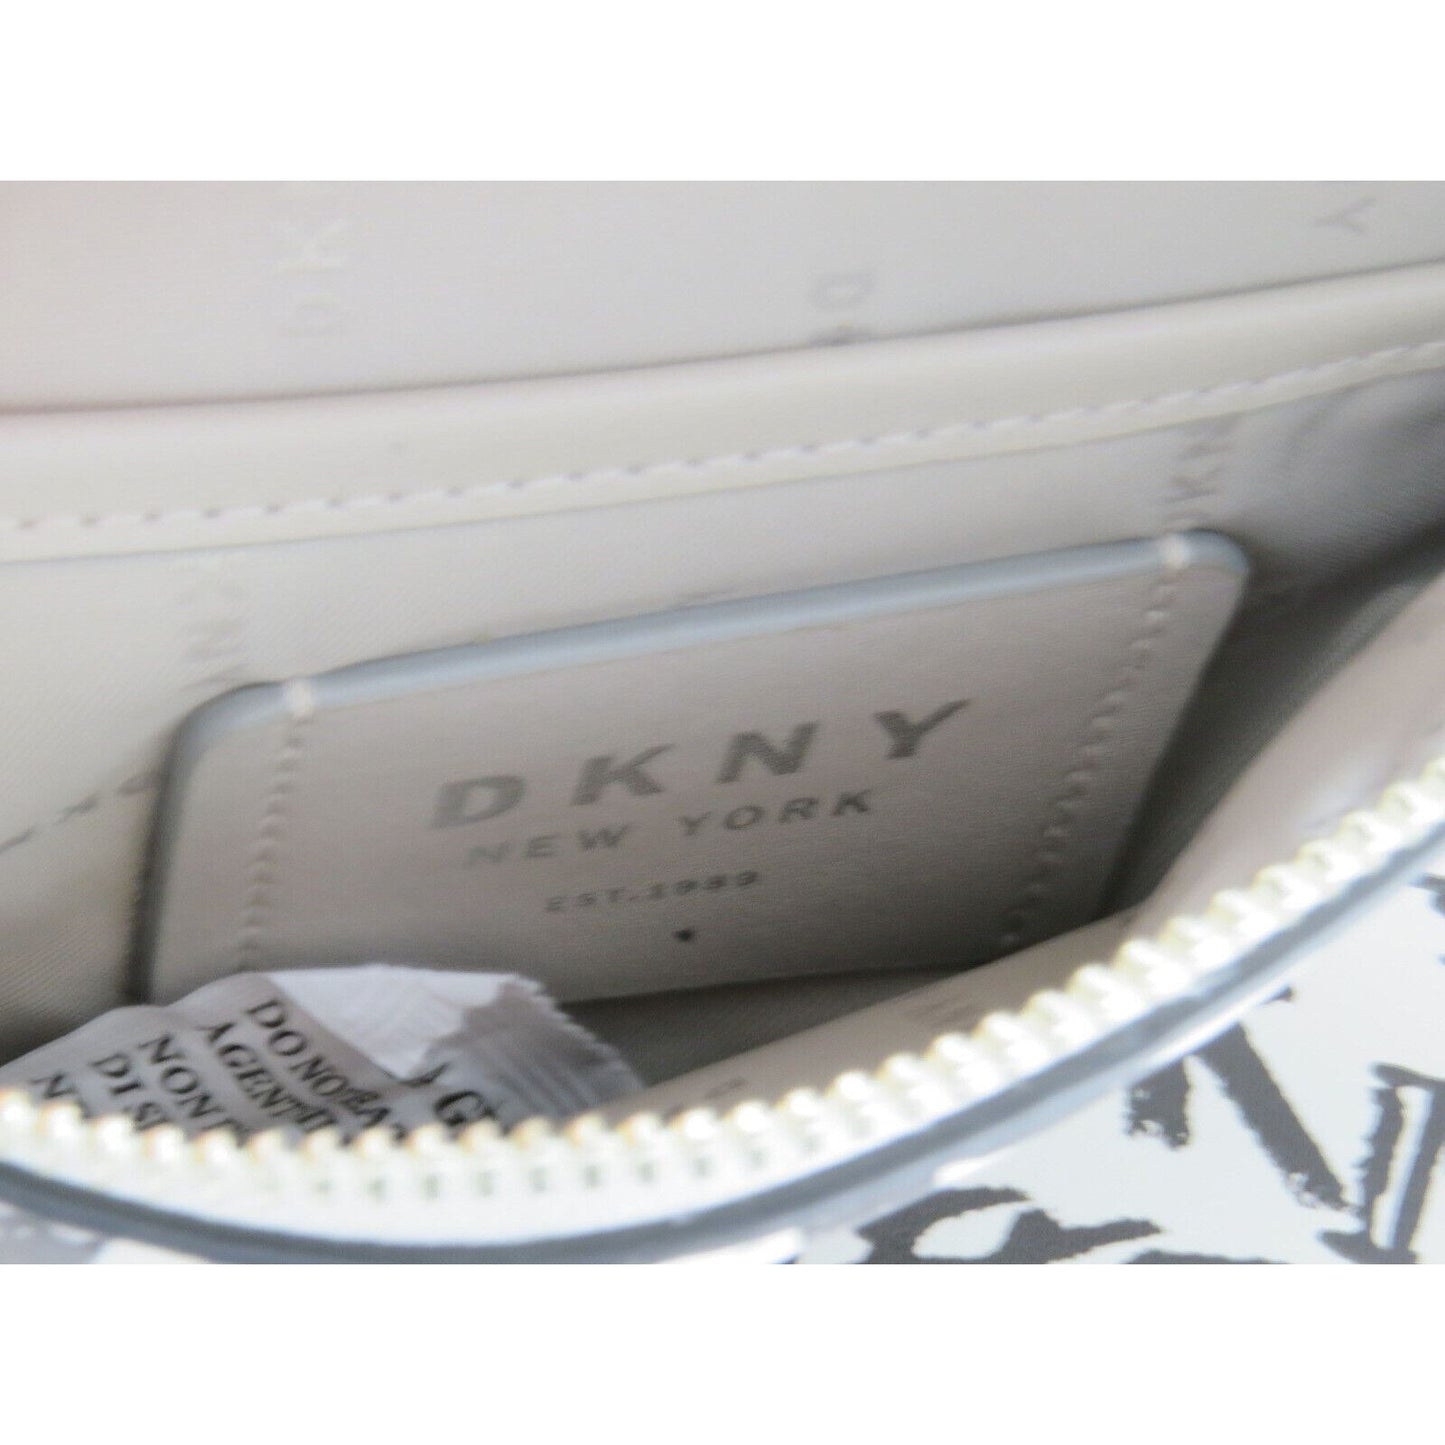 Women's Handbags DKNY Tilly Belt Bag White/Black